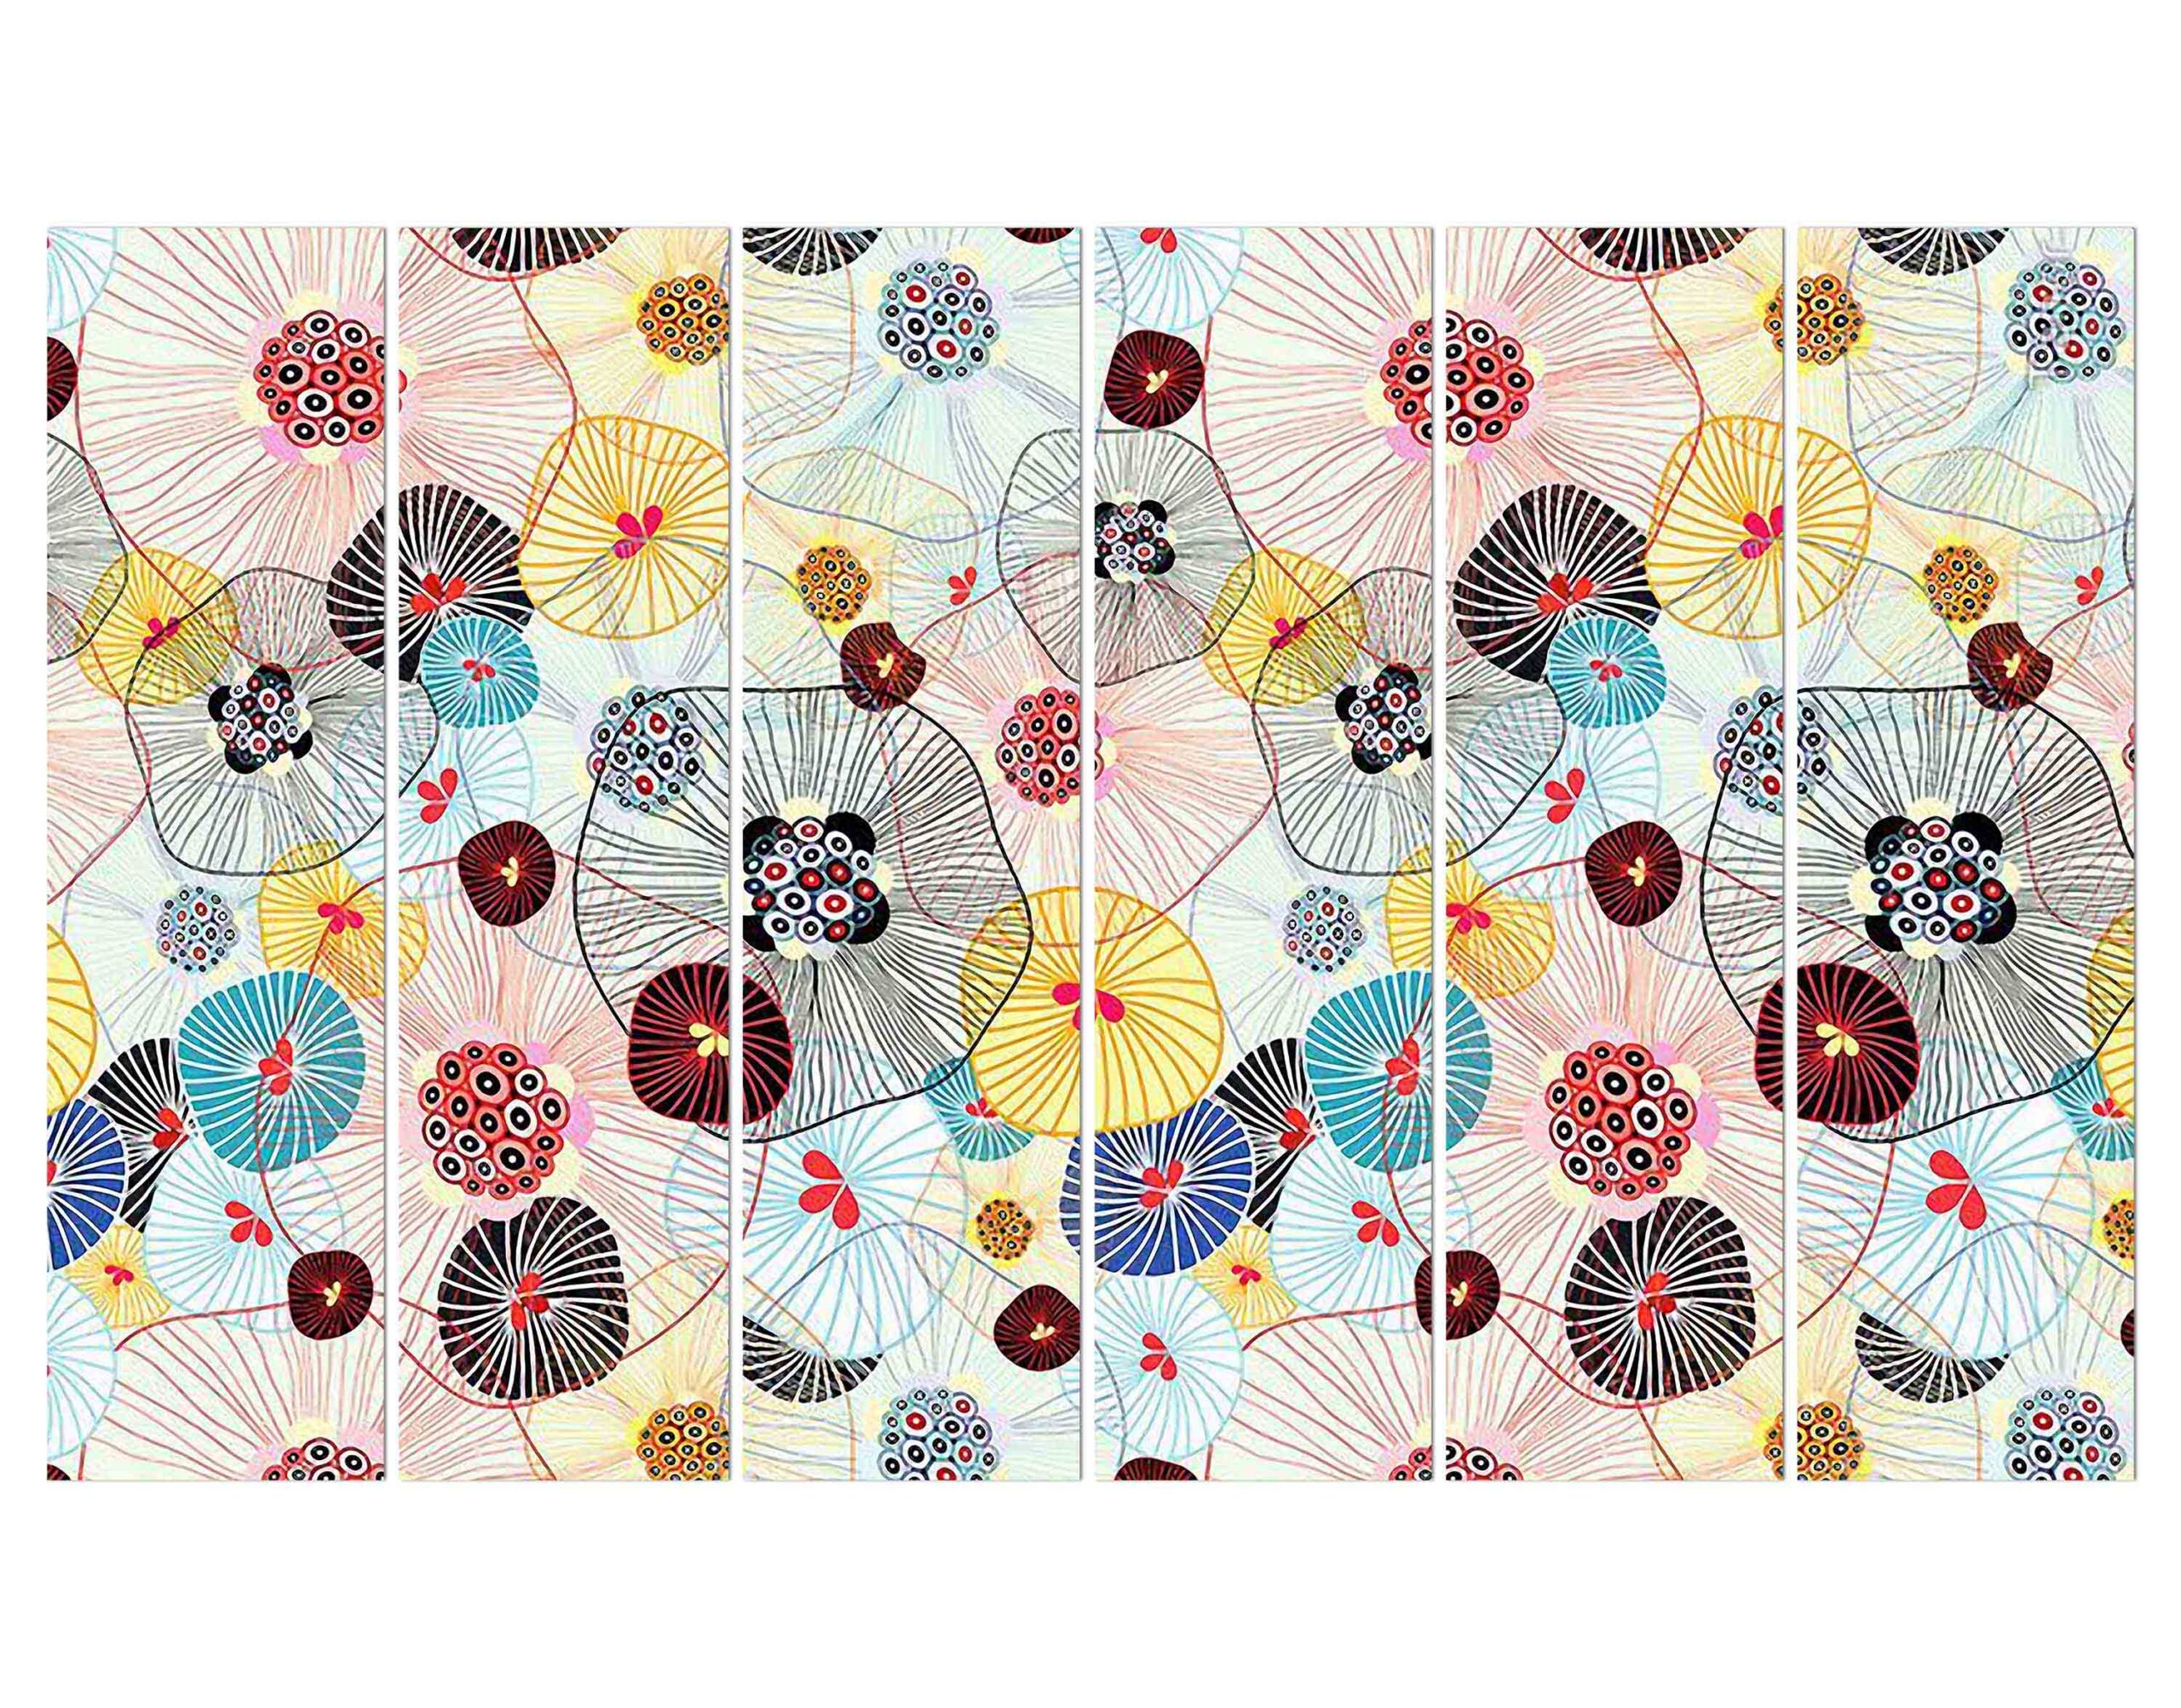 Motif Pattern Designed1 Wall Digital Print